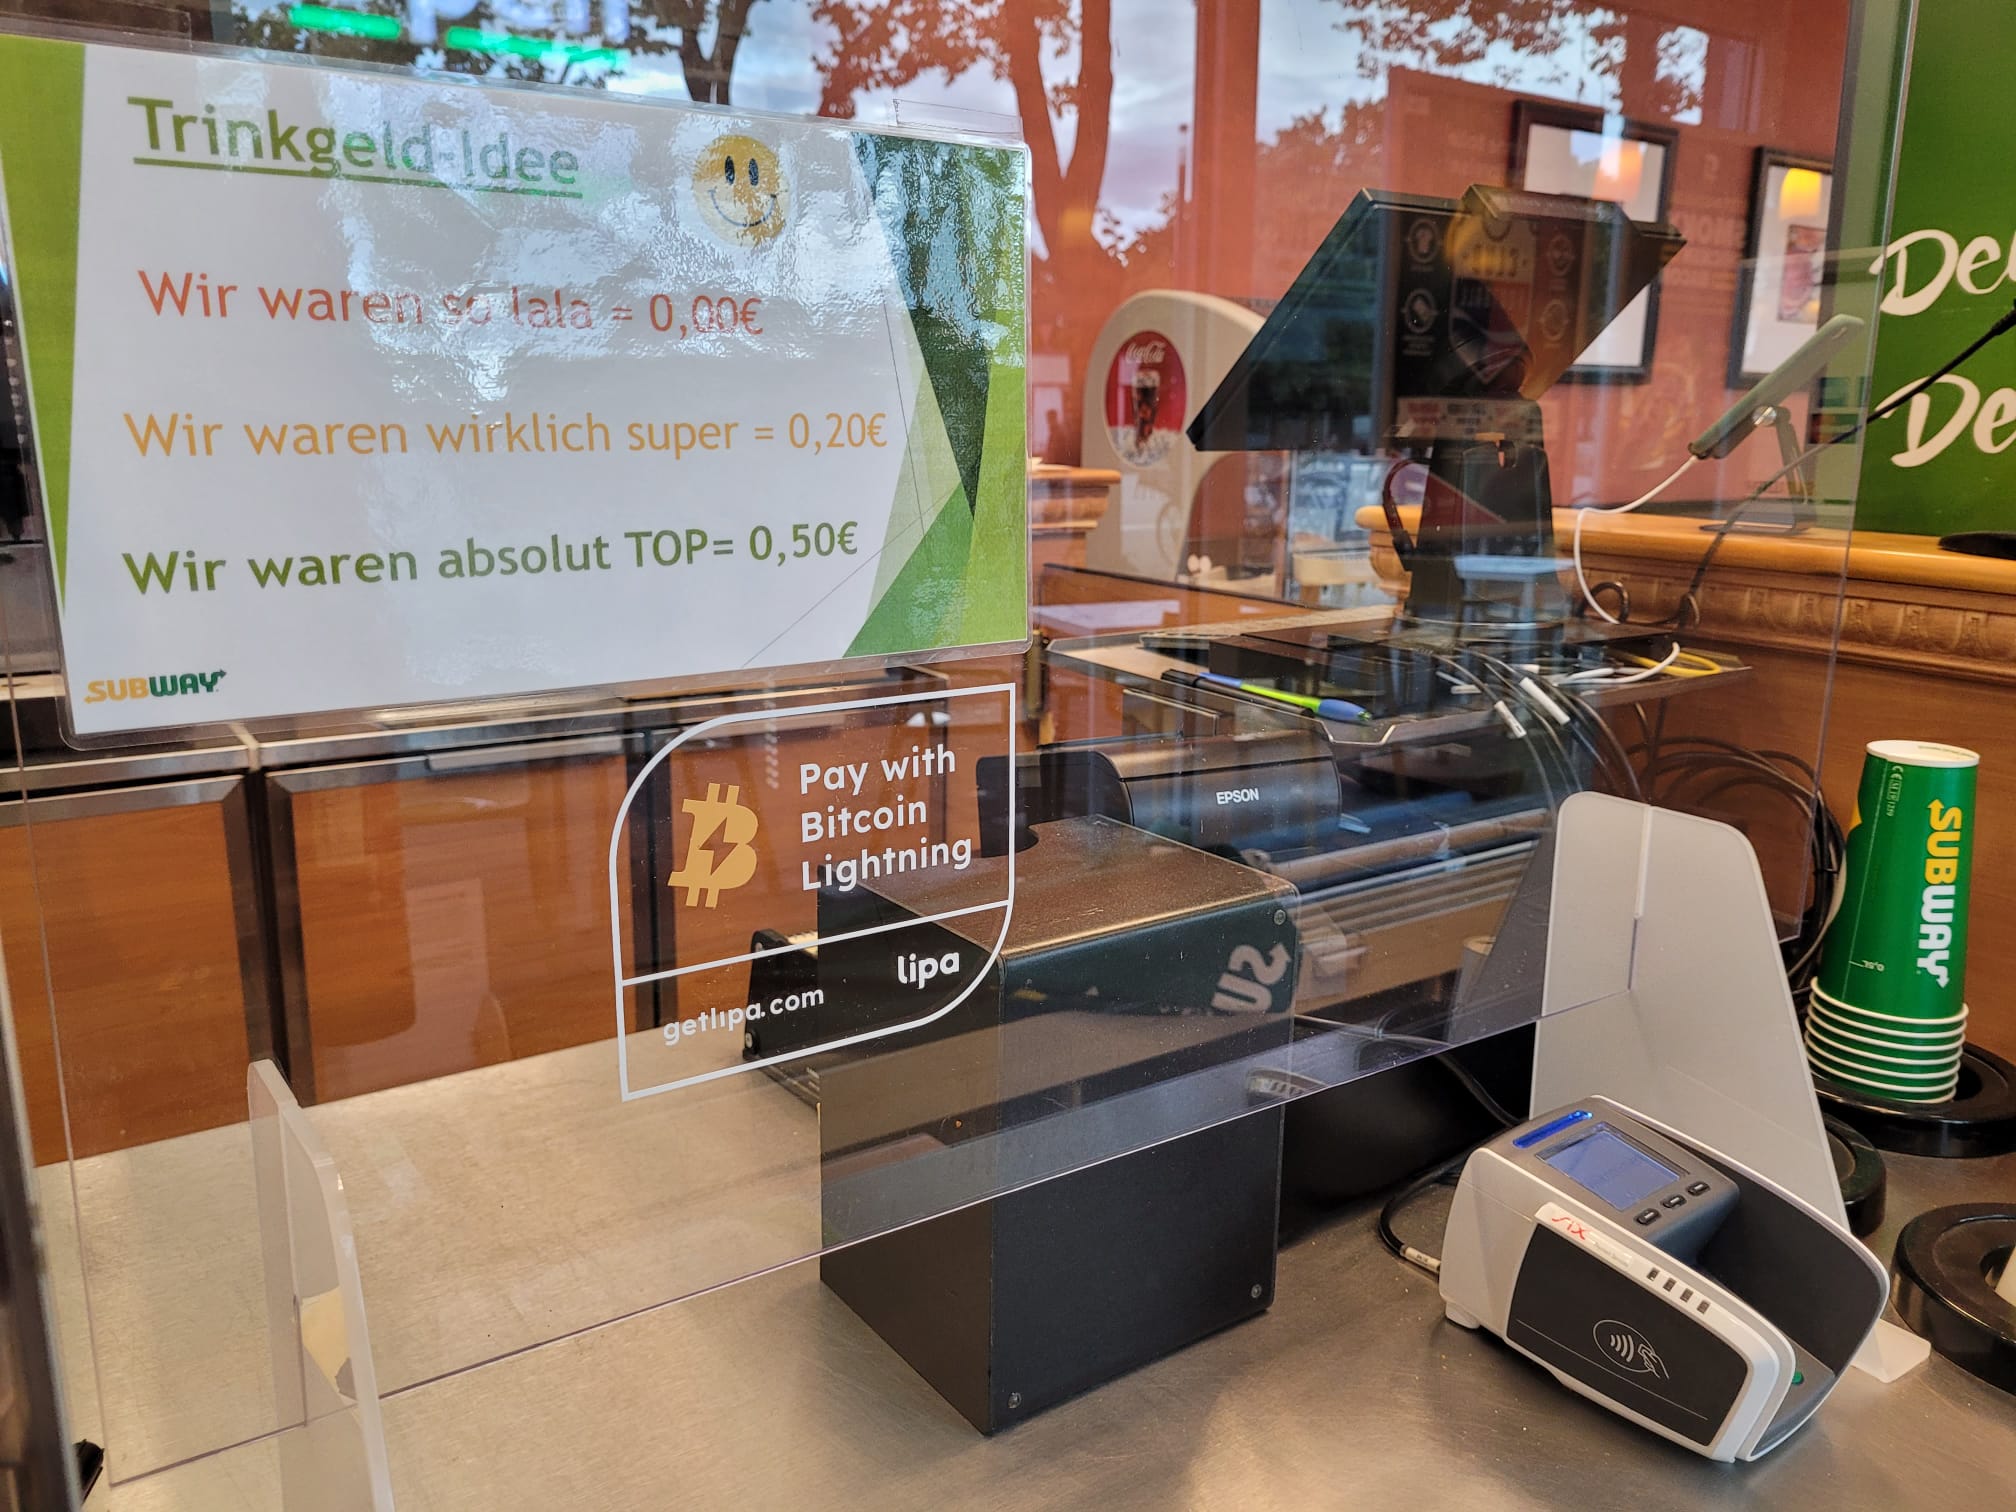 Die Subway Filiale im Einkaufszentrum Ziel in Berlin-Hennigsdorf akzeptiert Zahlungen per Bitcoin Lightning